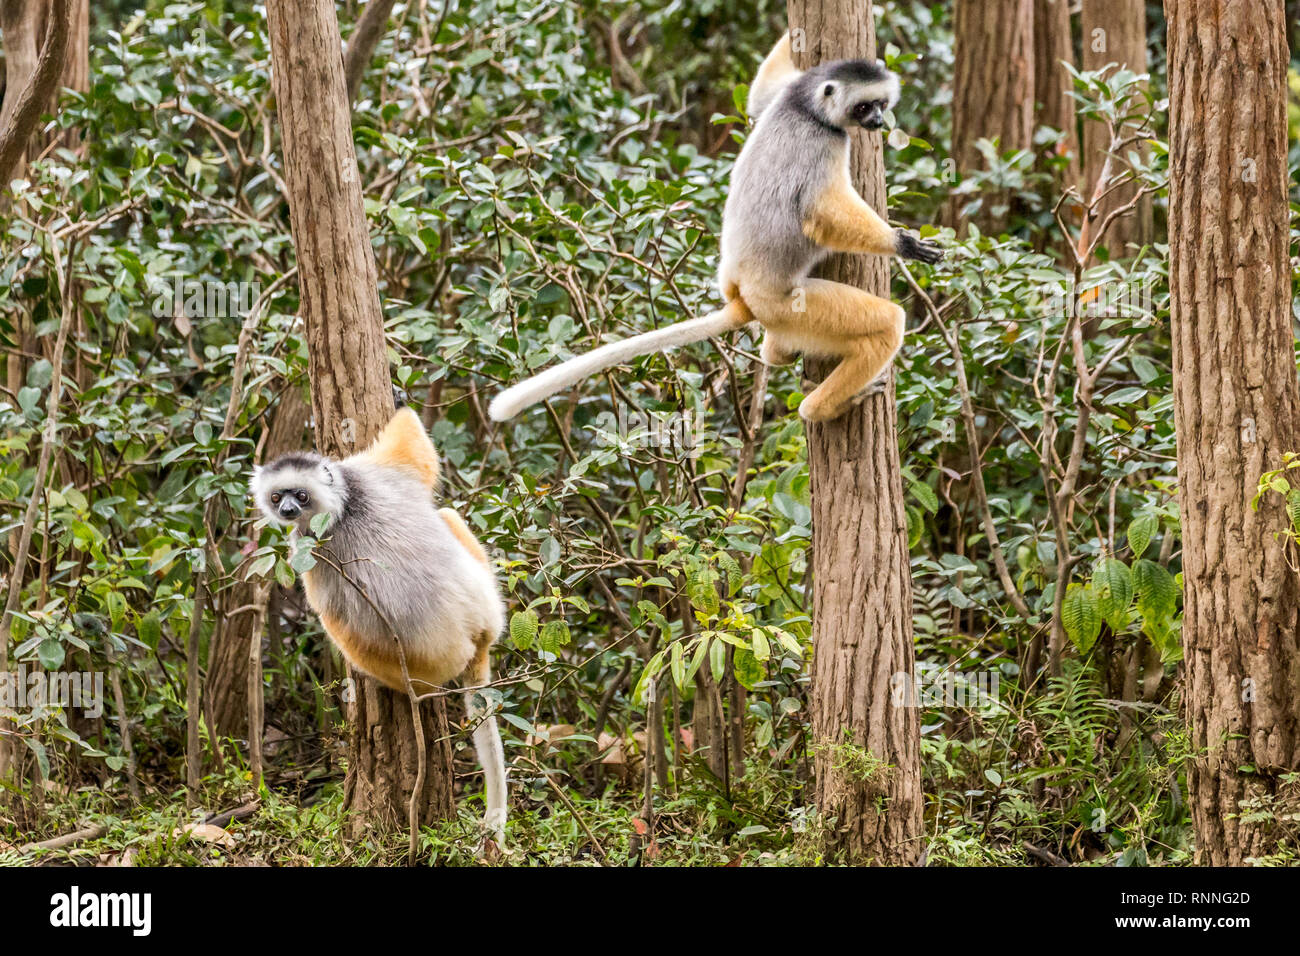 Diademed Sifakasor aka diademed simpona, Propithecus diadema, a lemur, about to leap, Lemur Island, Mantandia National Park, Madagascar Stock Photo